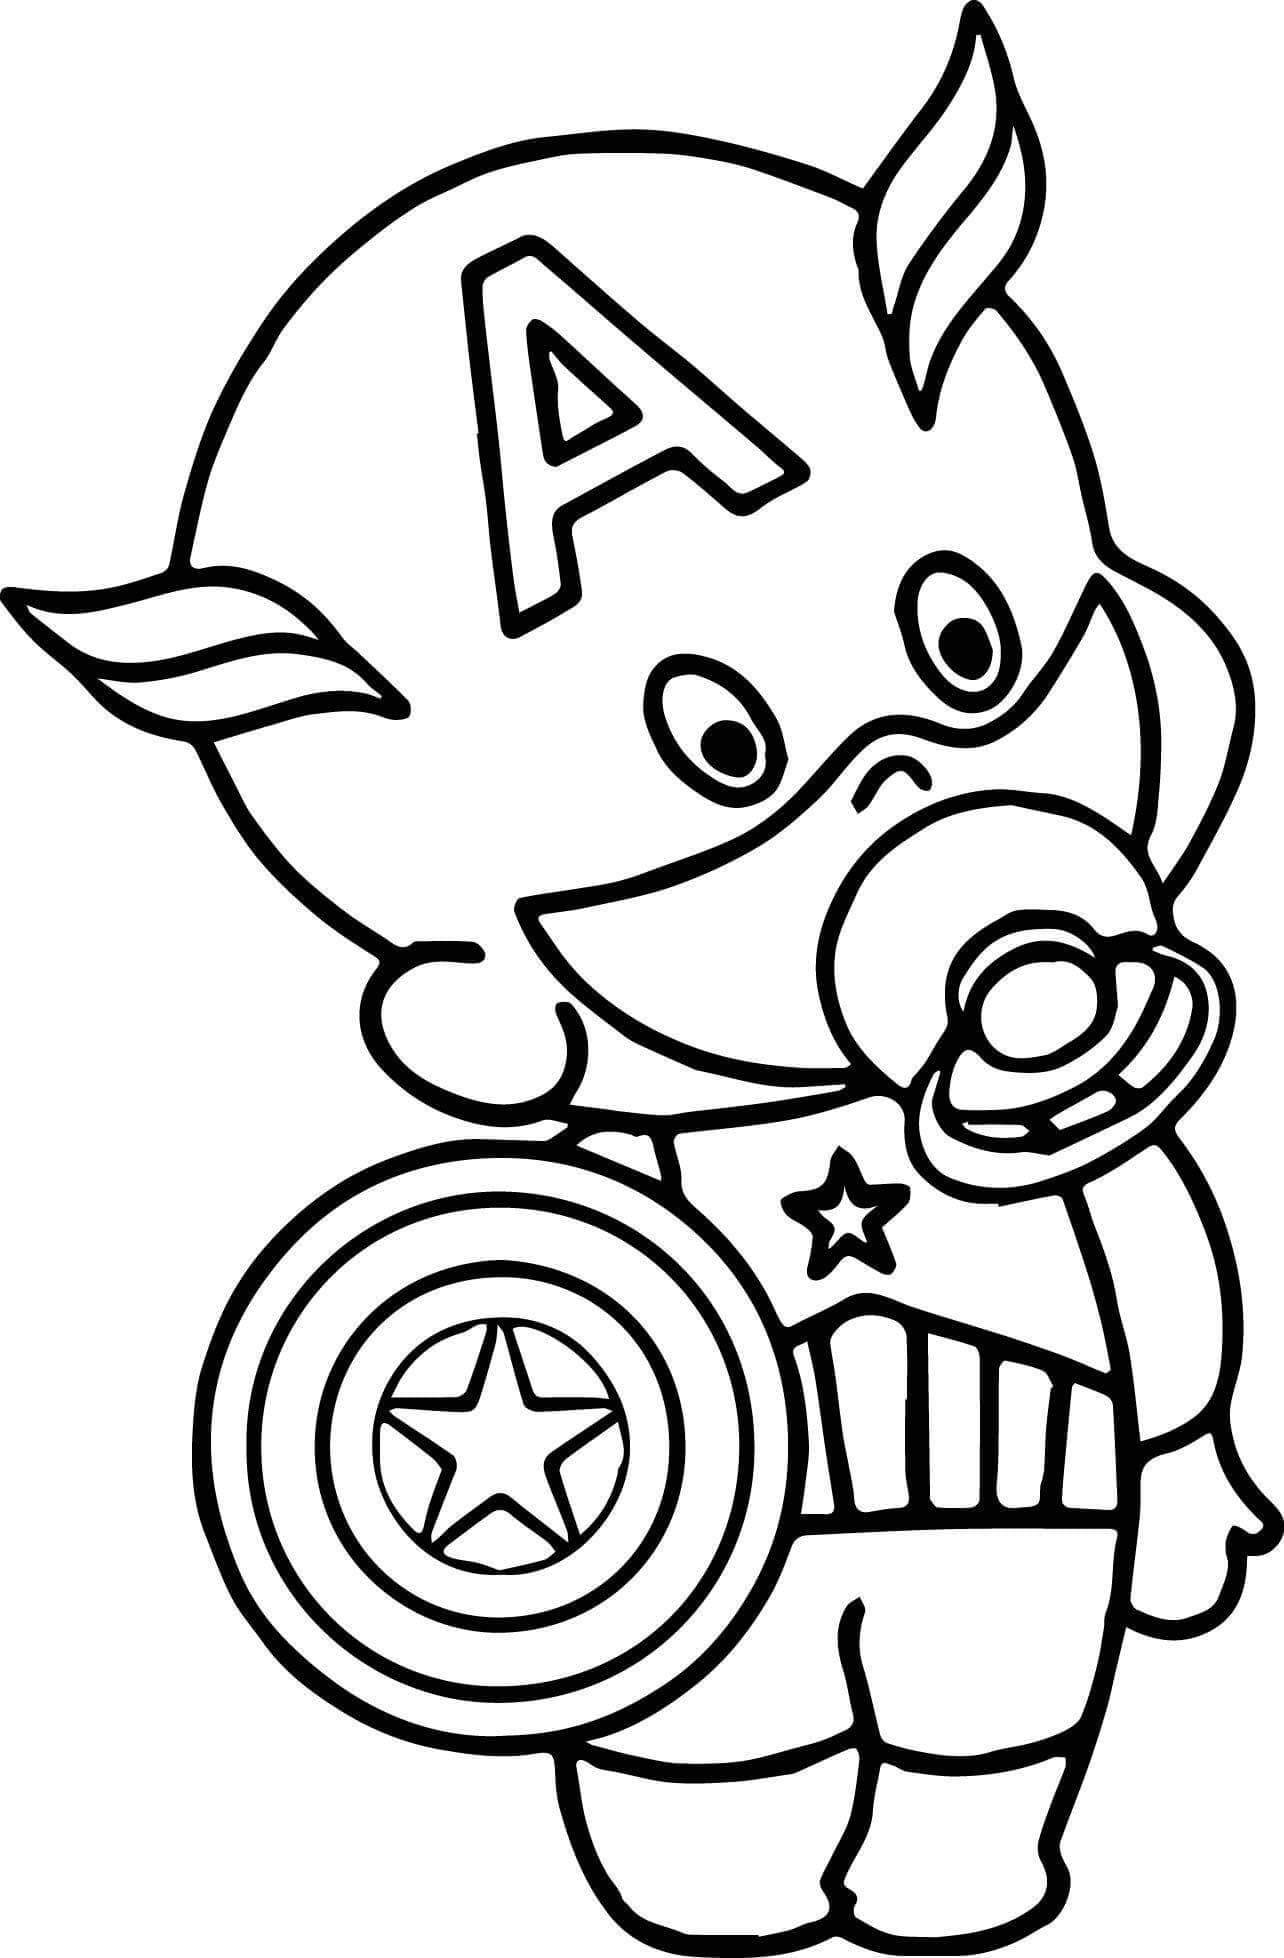 Капитан Америка раскраска для детей